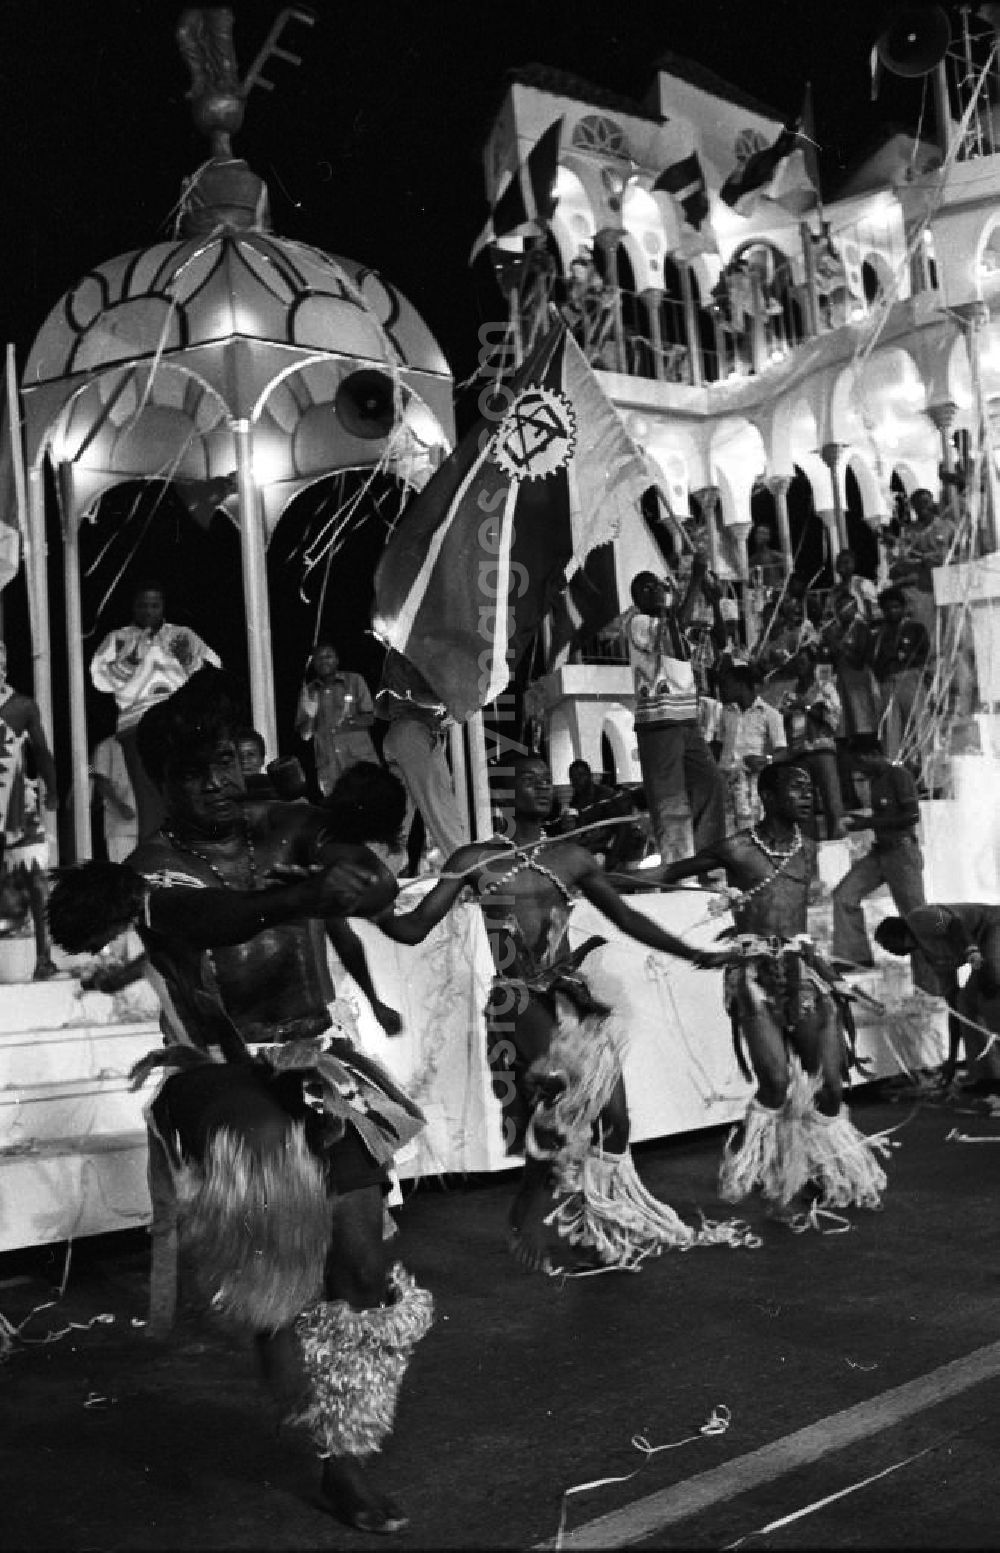 GDR picture archive: Havanna - Internationaler Karneval während der XI. Weltfestspiele vom 28.07. - 05.08.1978. Das fantasievolle Bühnenbild der Delegation aus Mosambik / Afrika. Das Festival stand unter dem Motto: Für antiimperialistische Solidarität, Frieden und Freundschaft. 18.500 Jugendliche aus 145 Ländern nahmen teil, darunter 20